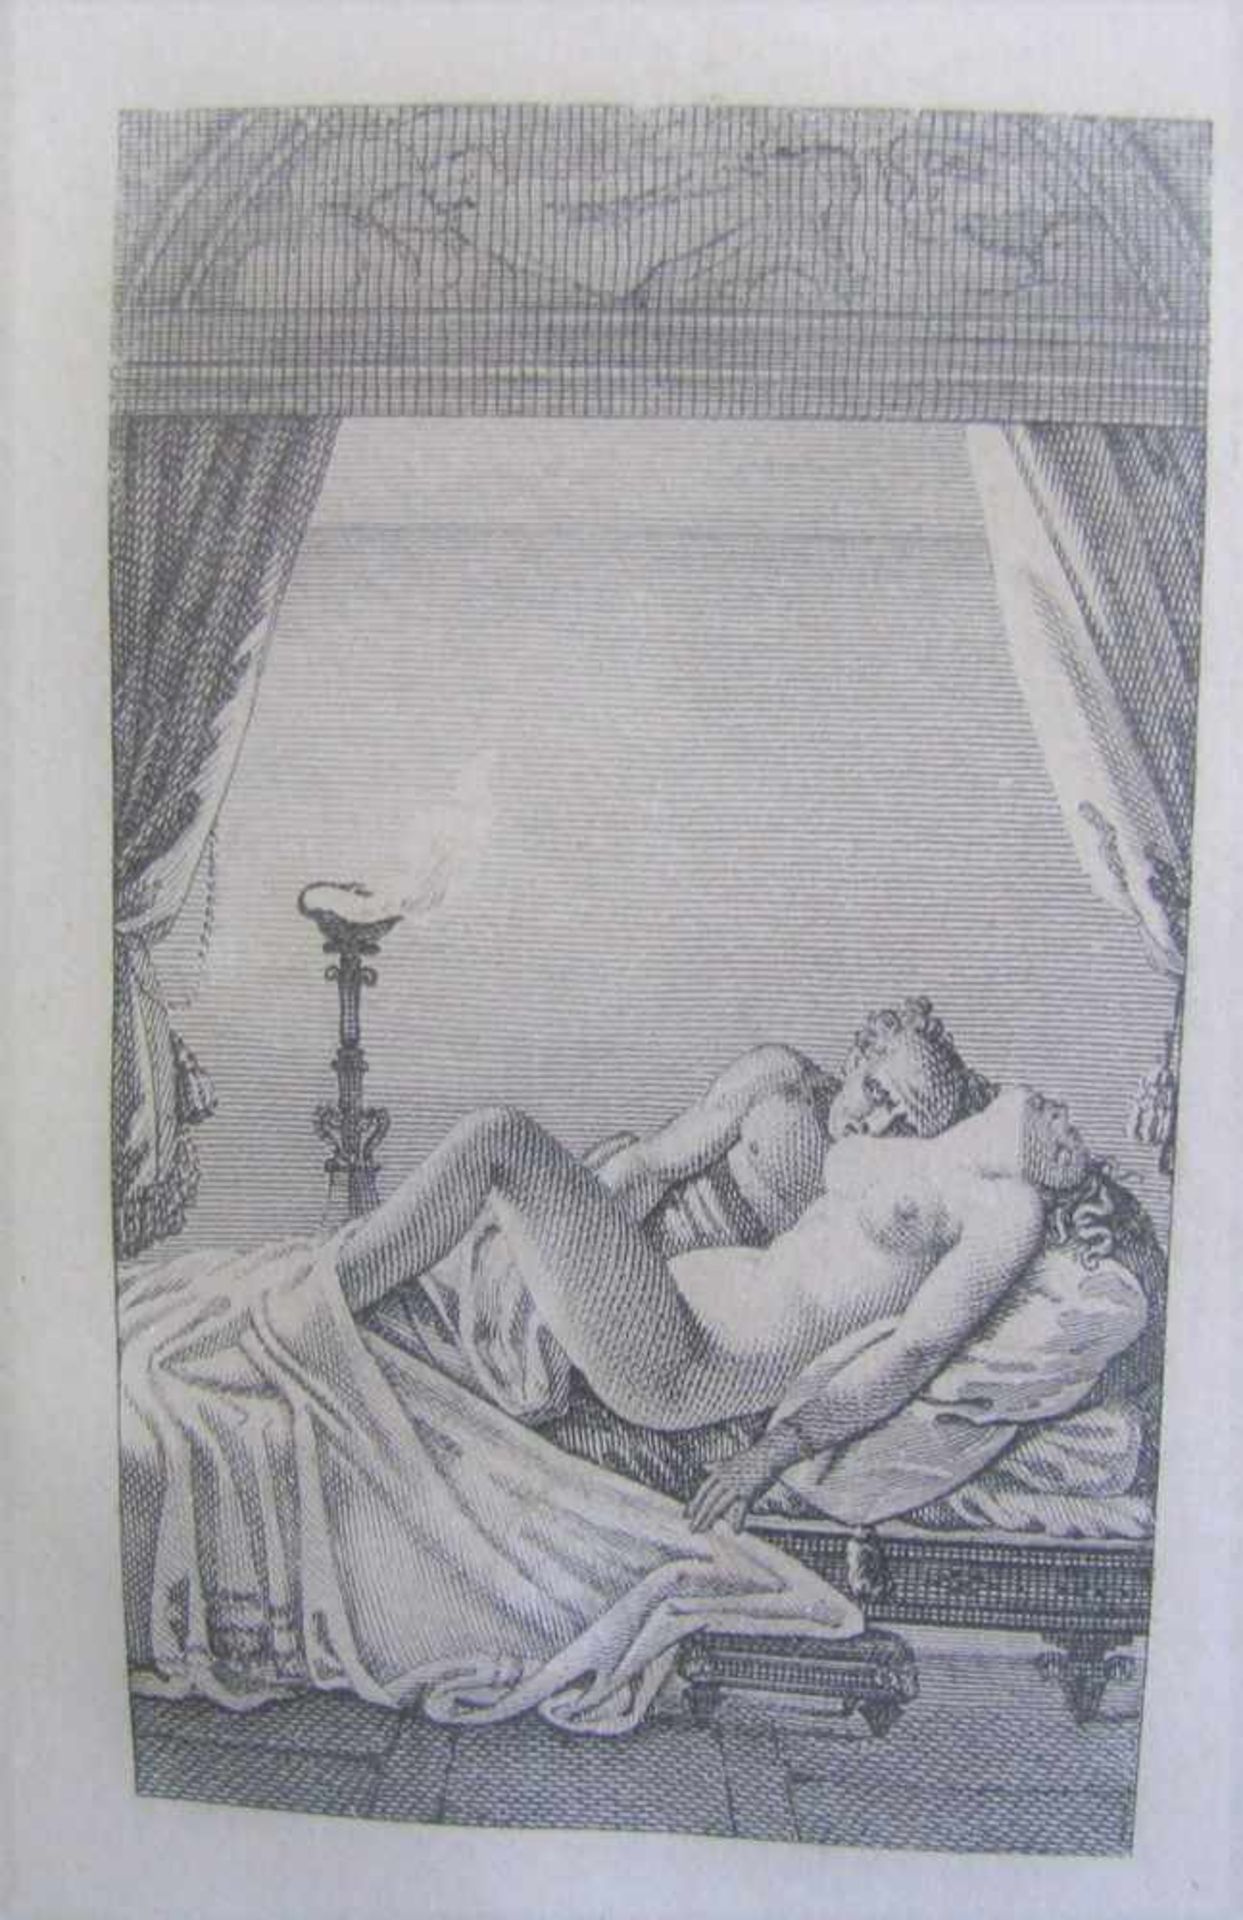 8 erotische Stiche, 19. Jahrhundert, ca. 8 x 5 cm, R.